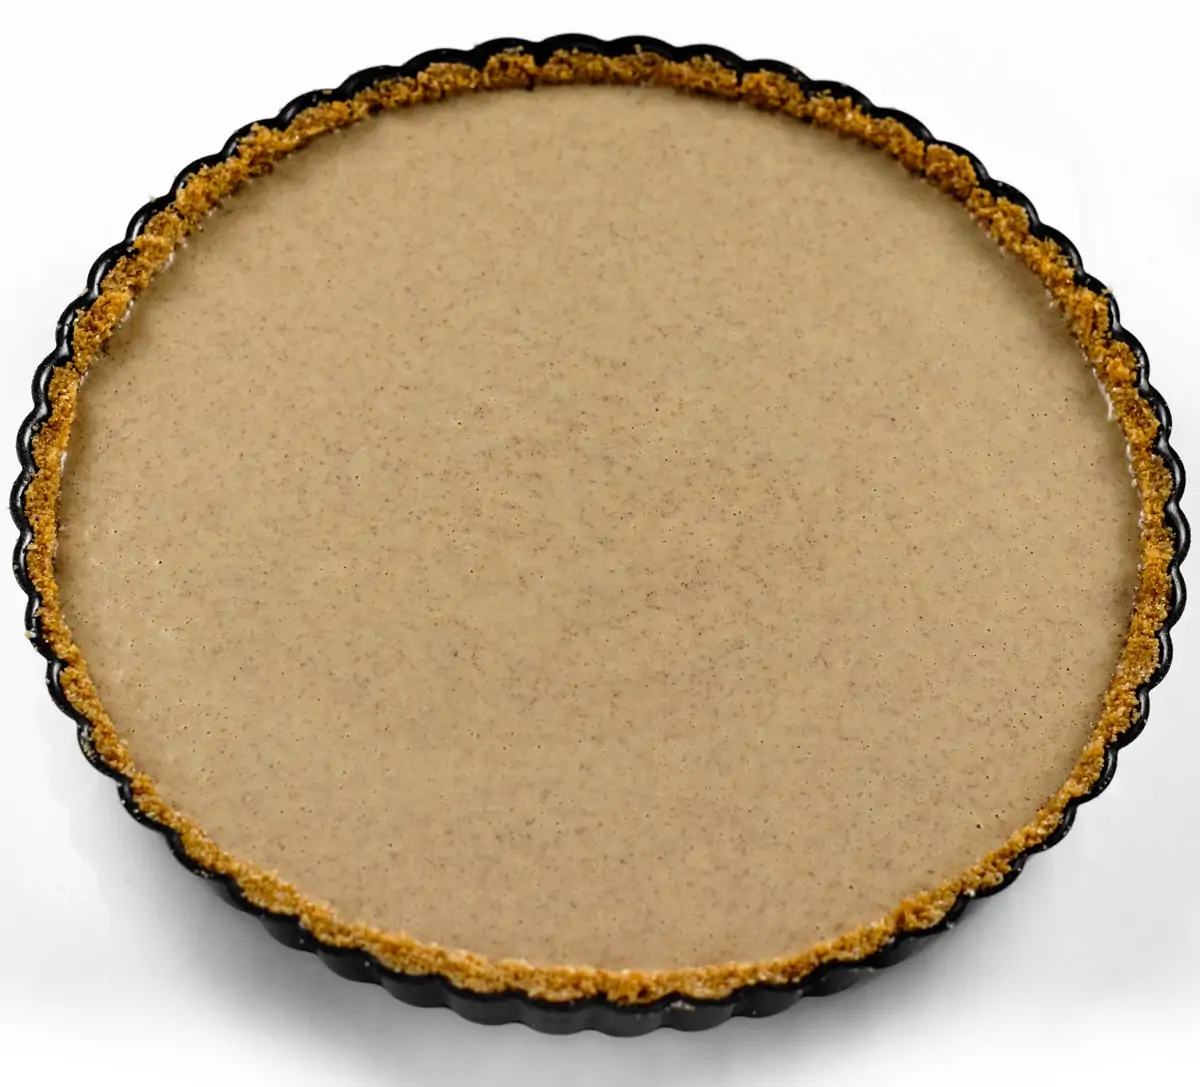 Cinnamon Pie Filling inside Graham Cracker Crust Pre-baked